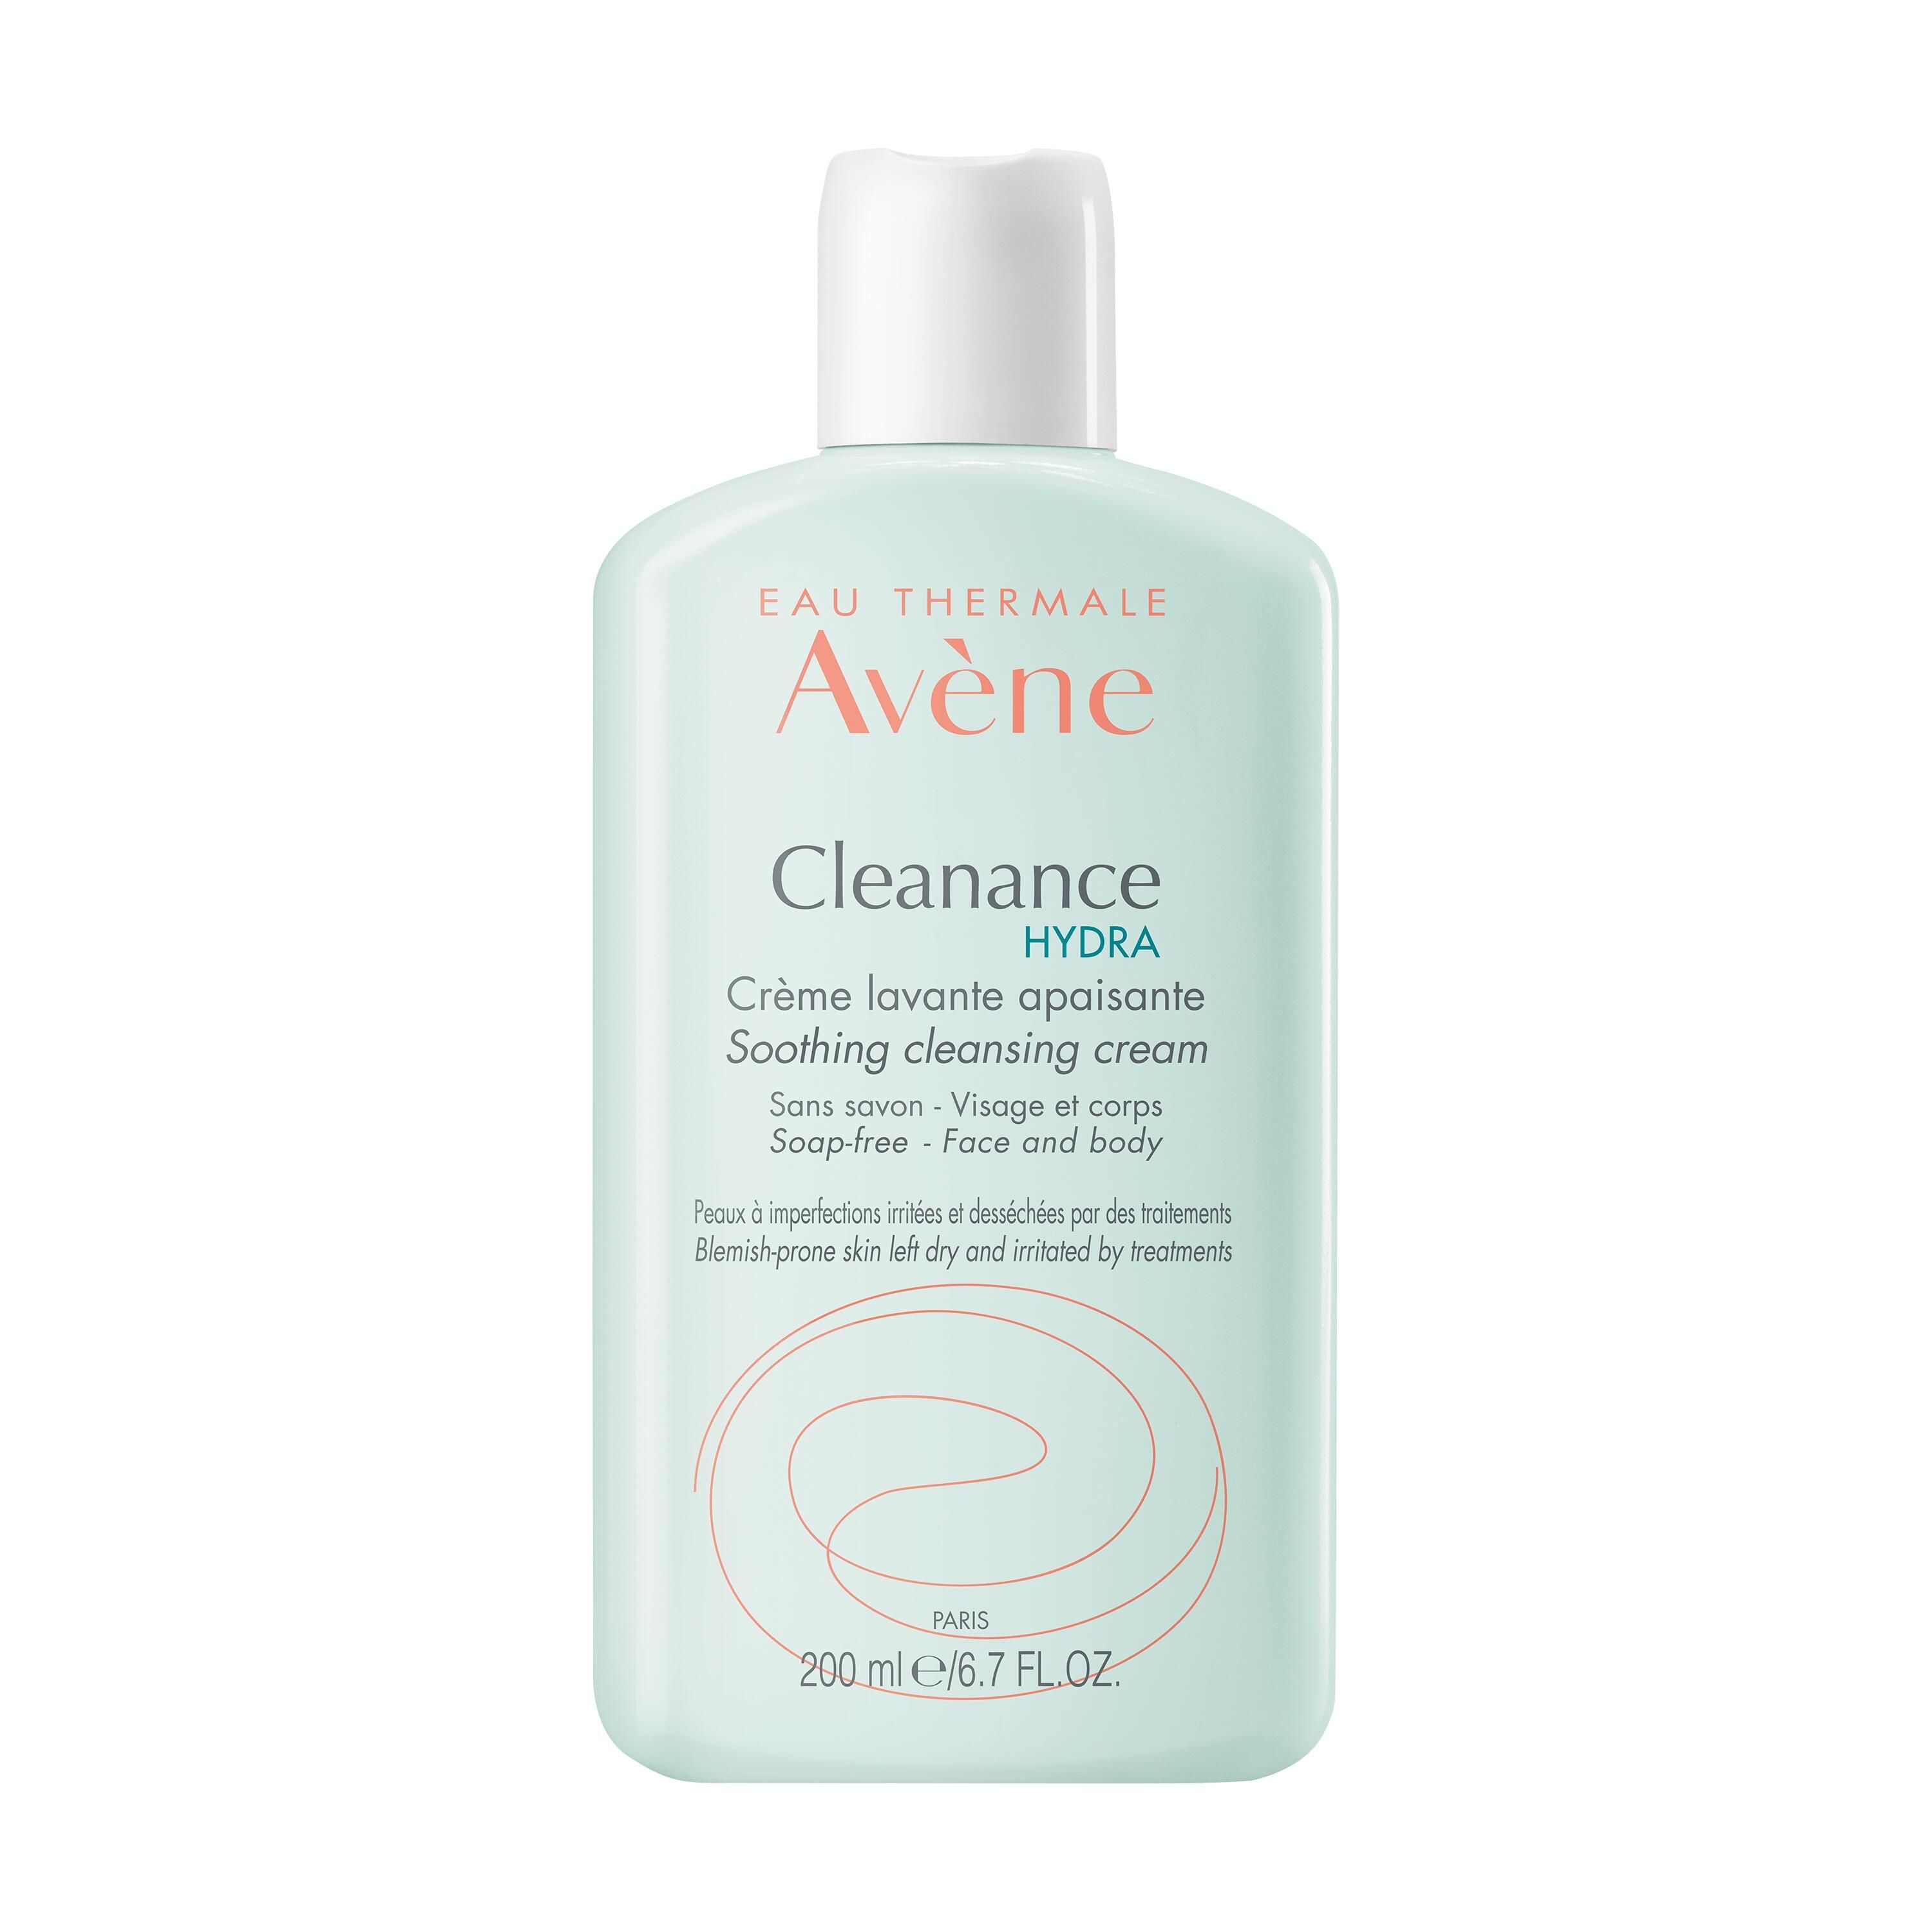 Avene Cleanance Hydra Crema Detergente 200ml